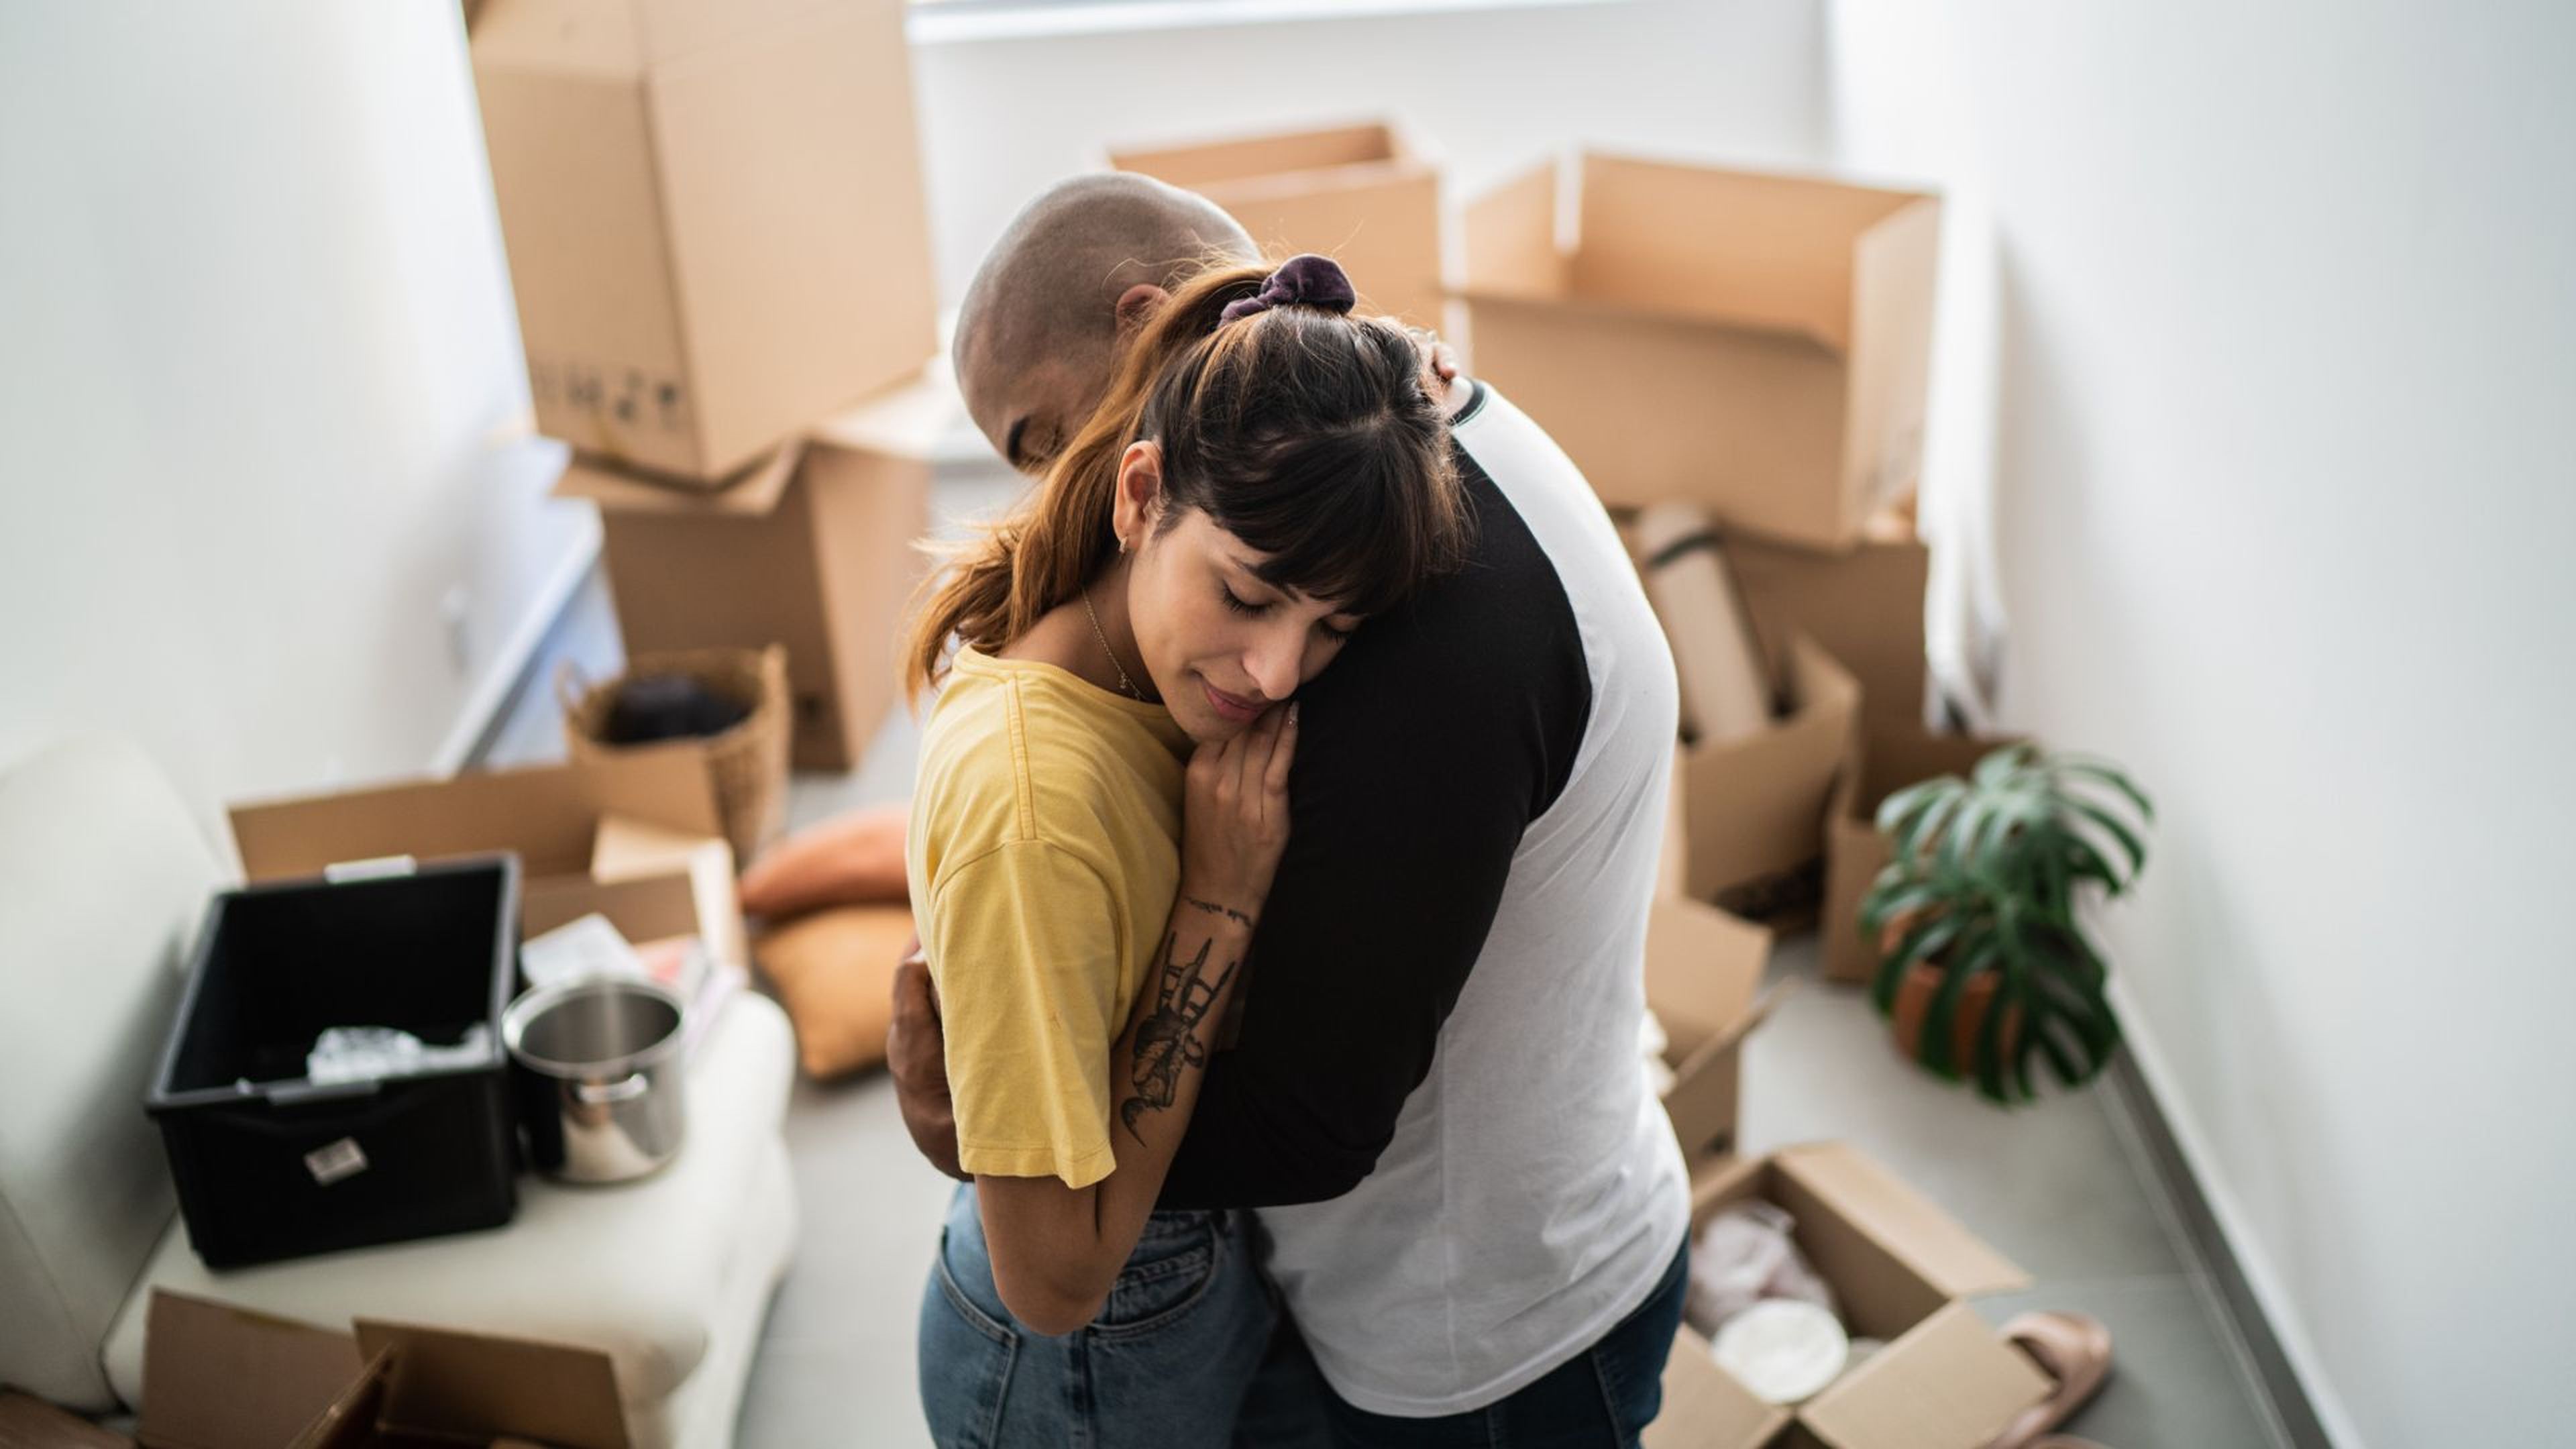 Una pareja se abraza en su casa rodeada de cajas.